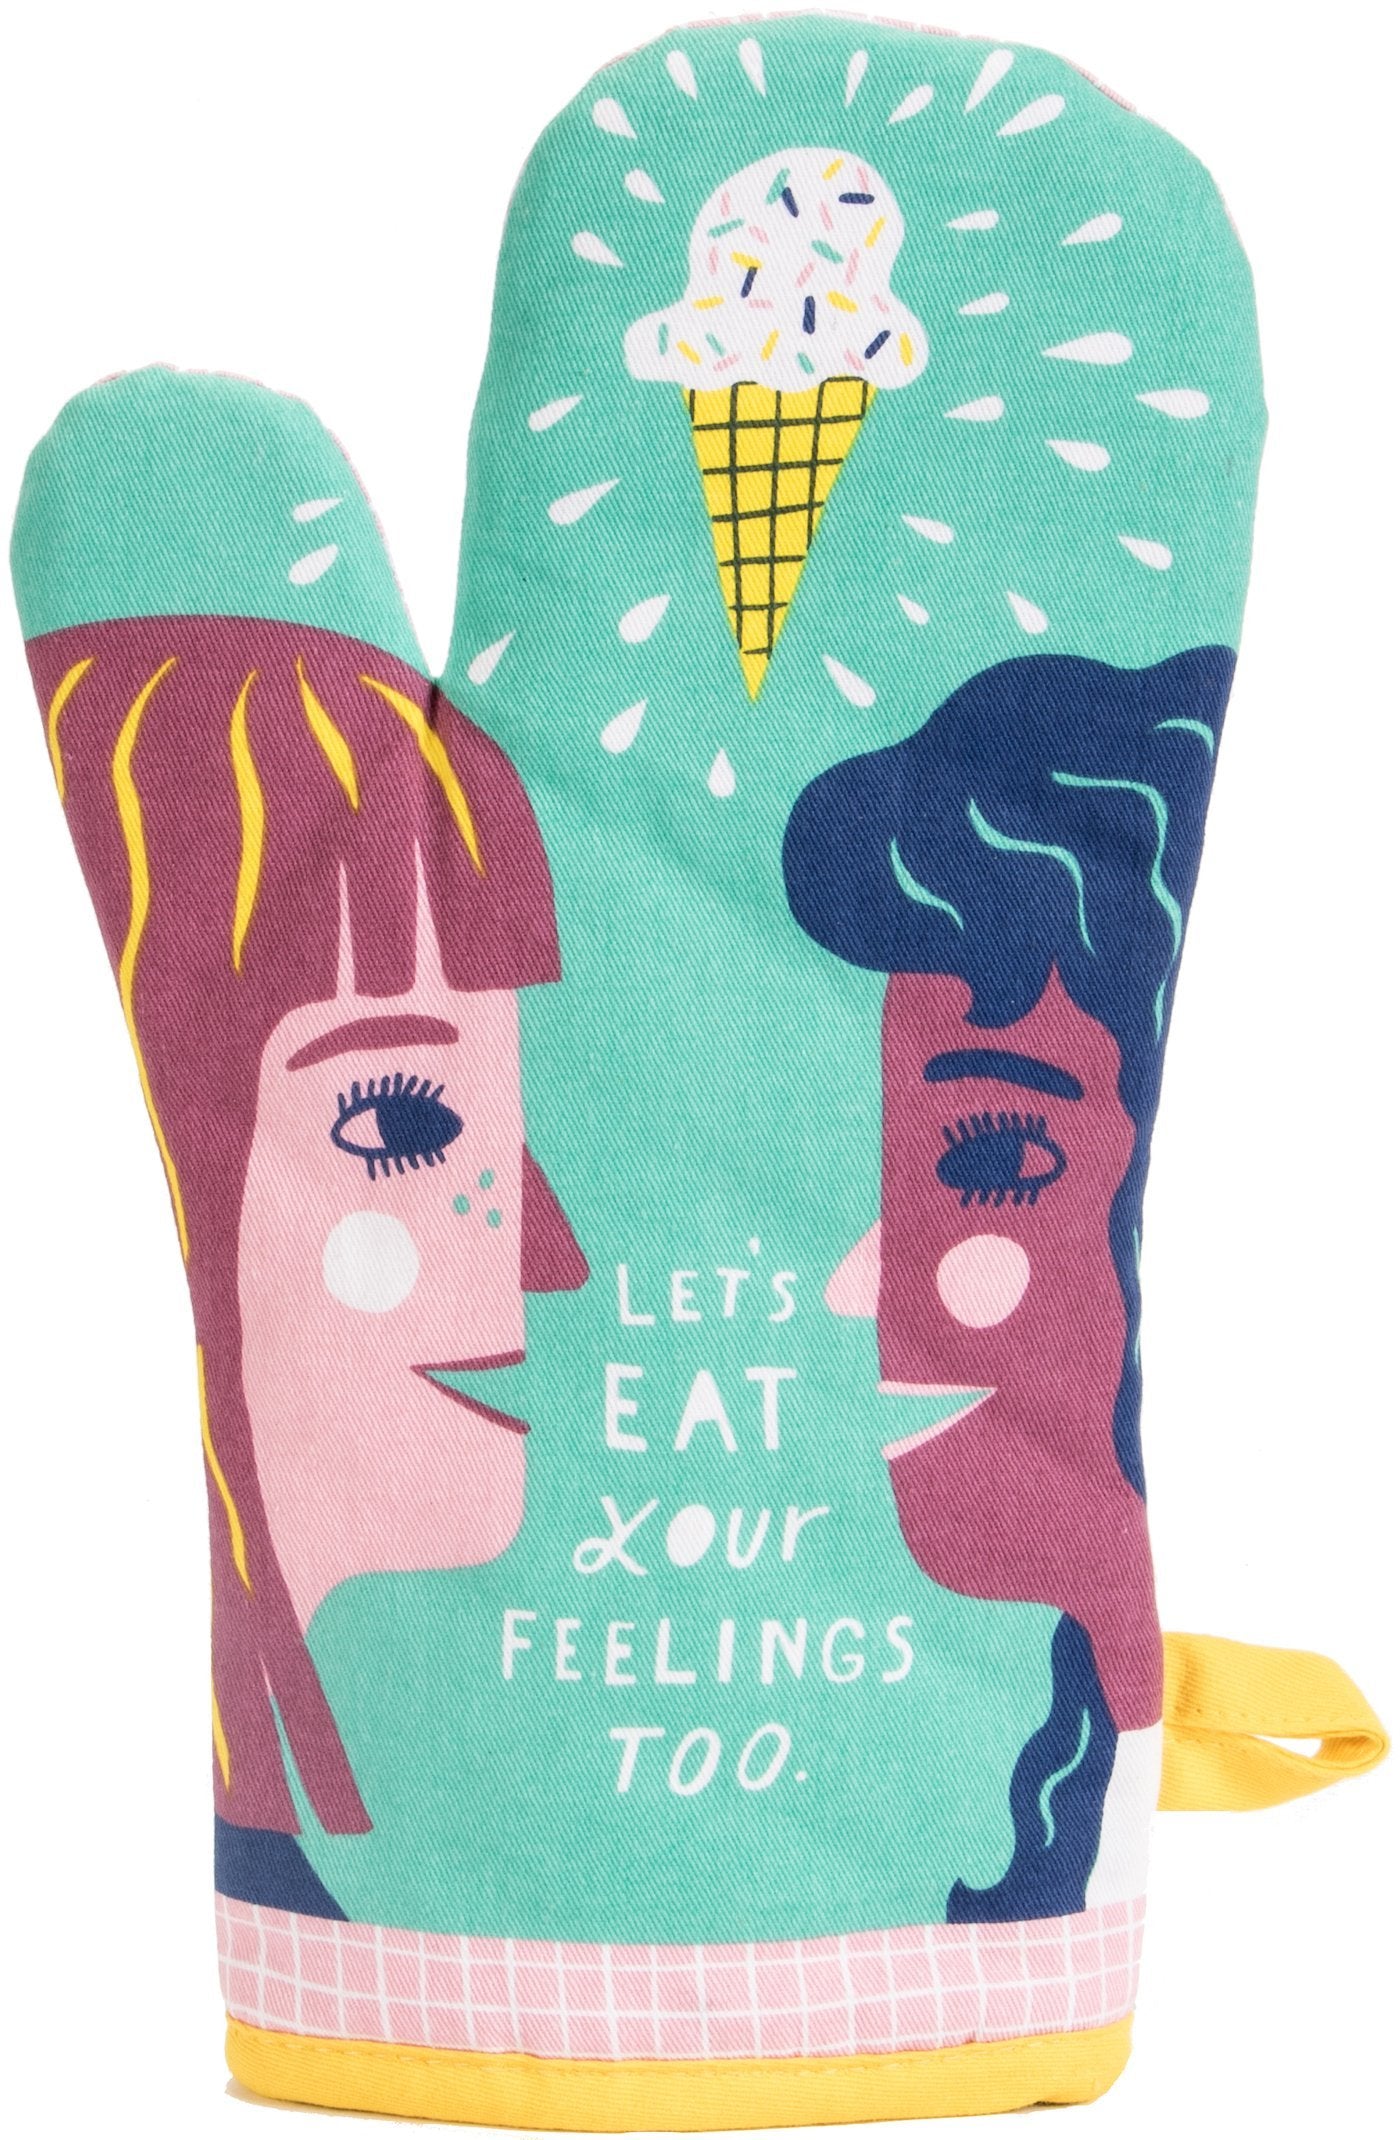 Oven Mitt - Let's Eat Our Feelings